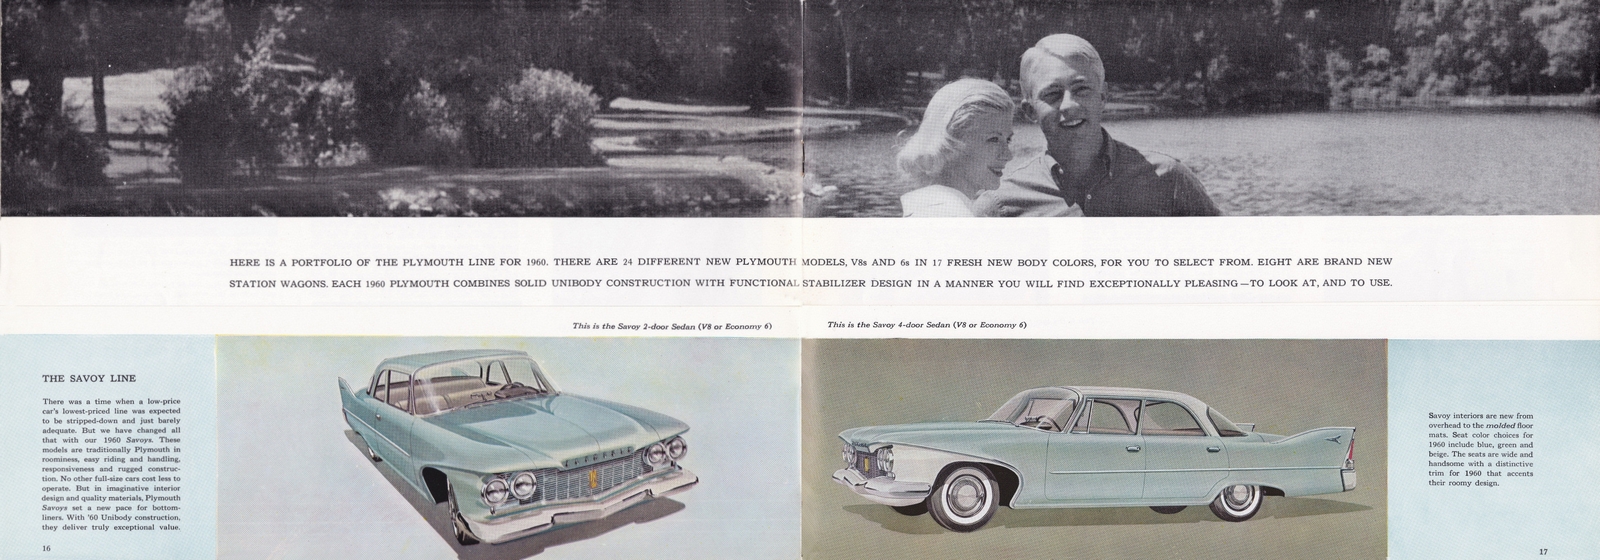 n_1960 Plymouth Prestige (Cdn)-16-17.jpg